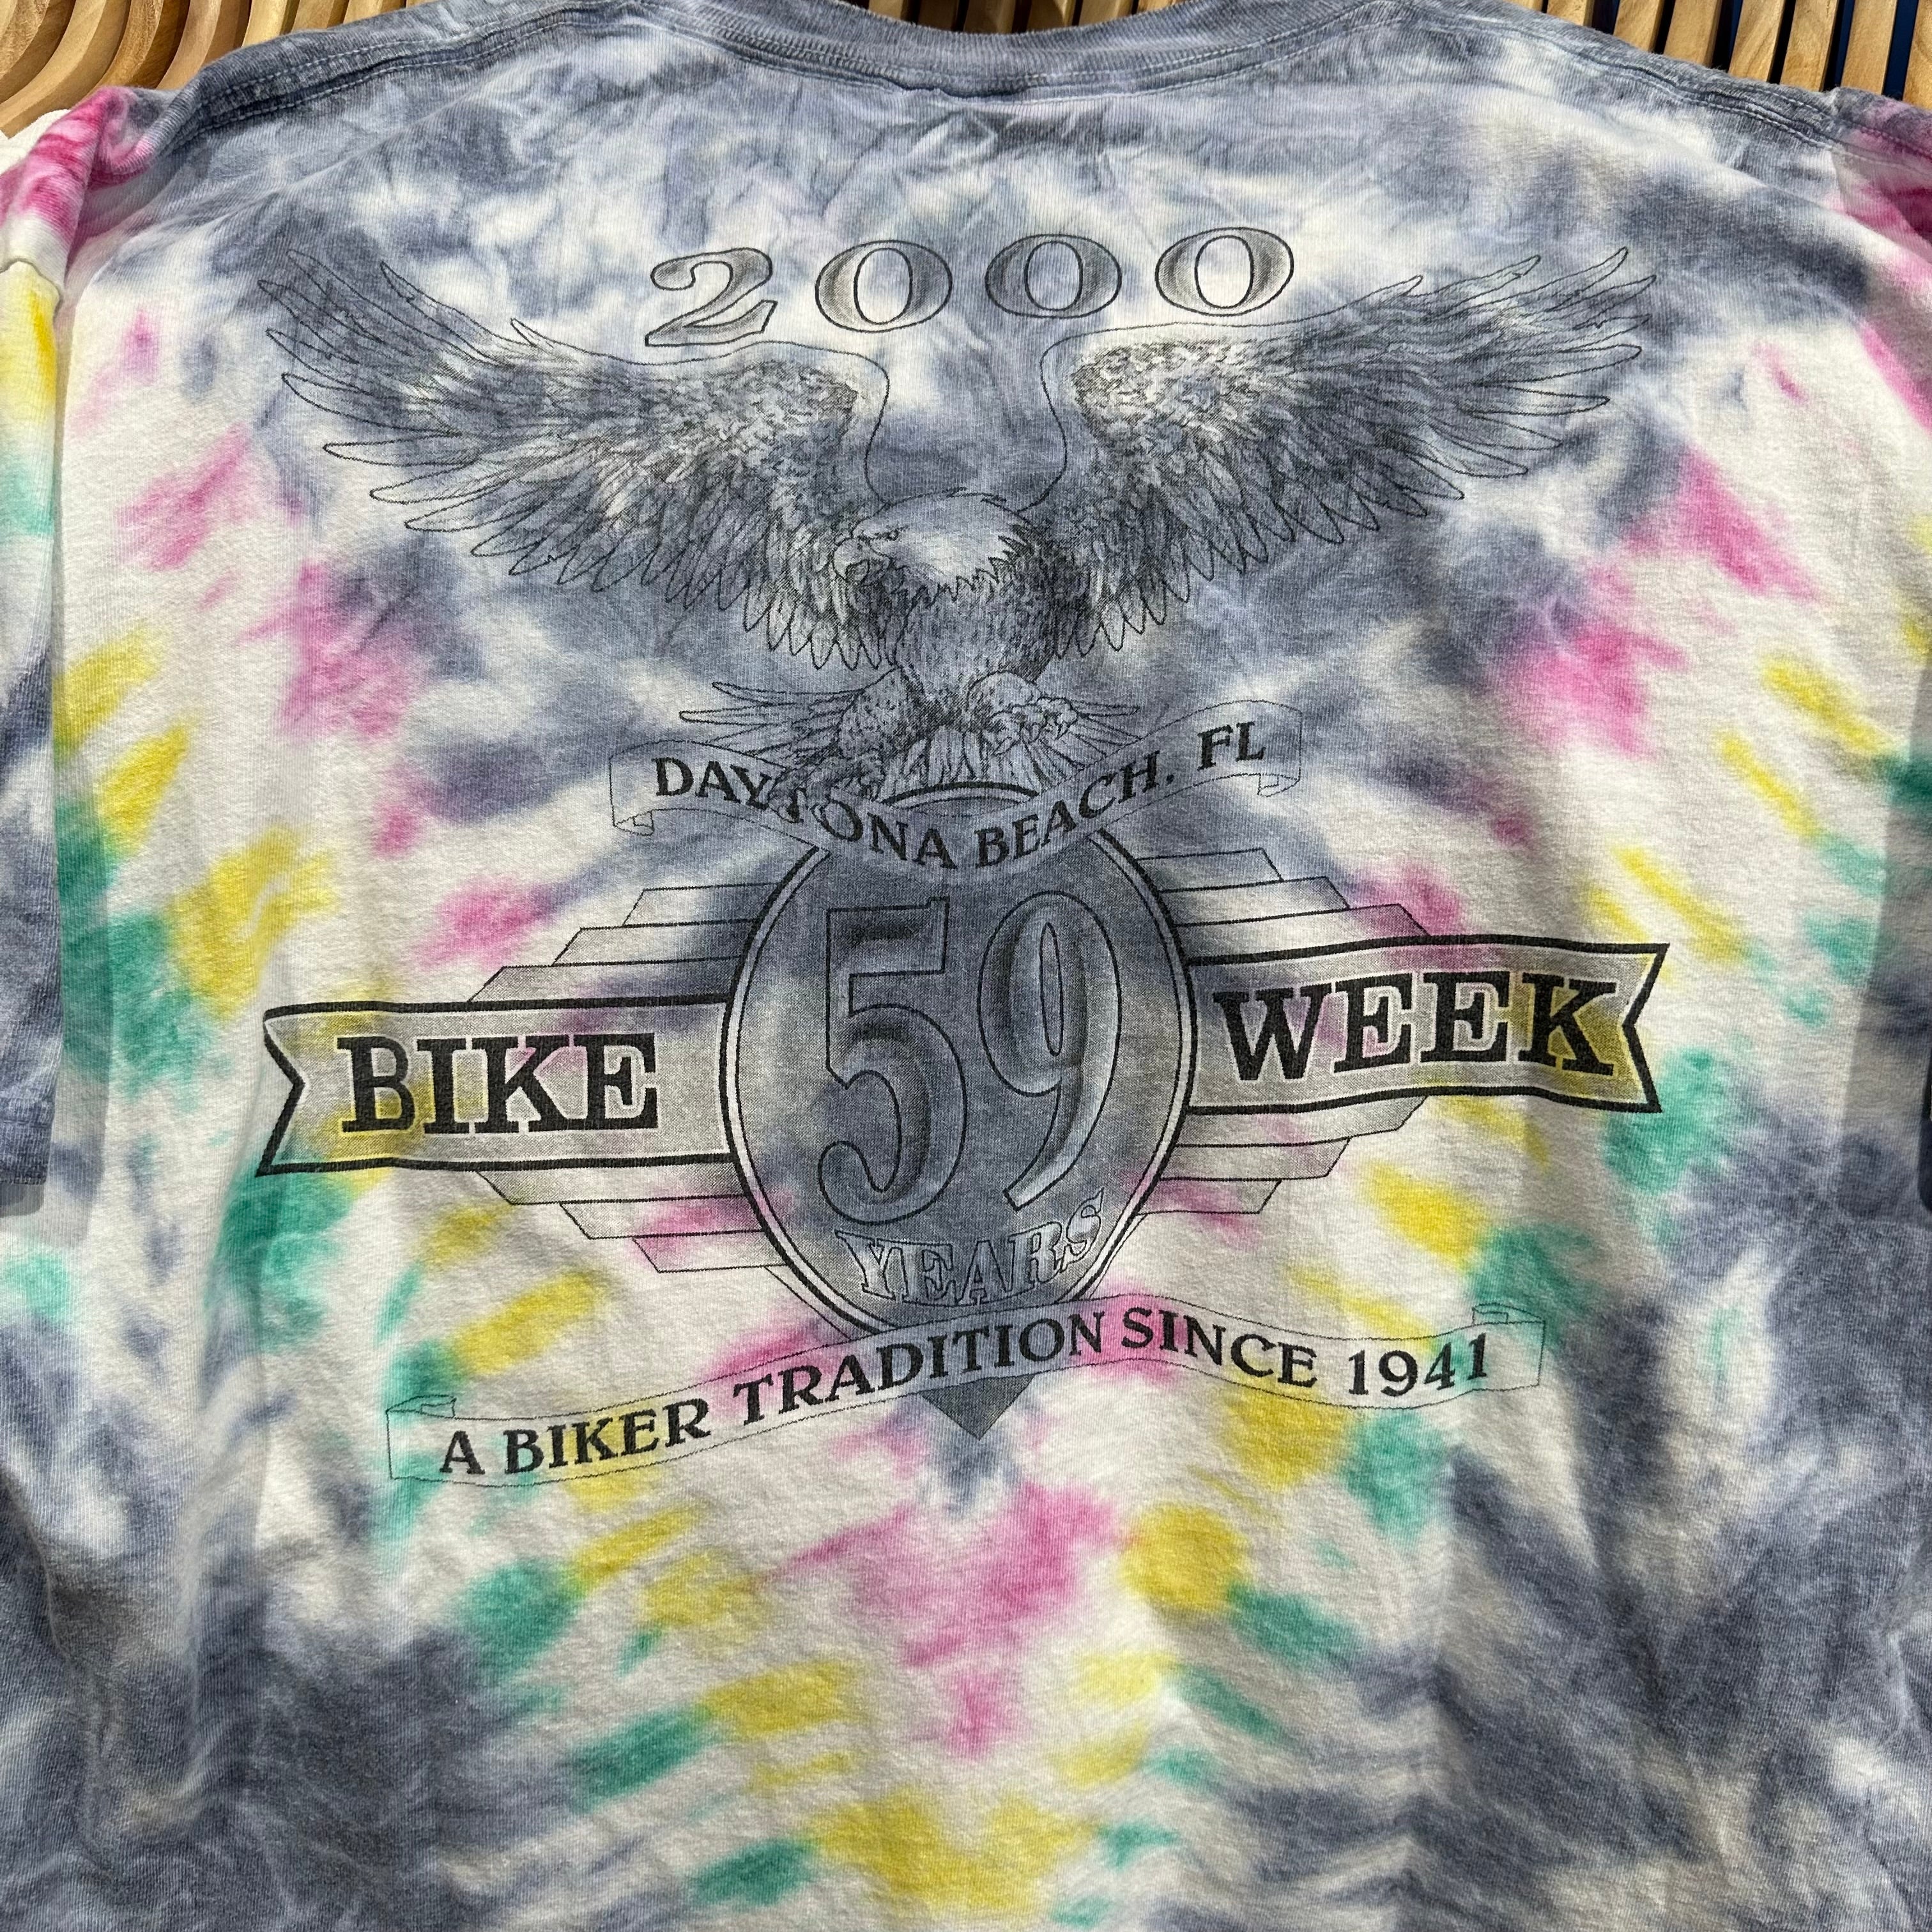 2000 Bike Week Dayton Tie Dye T-Shirt